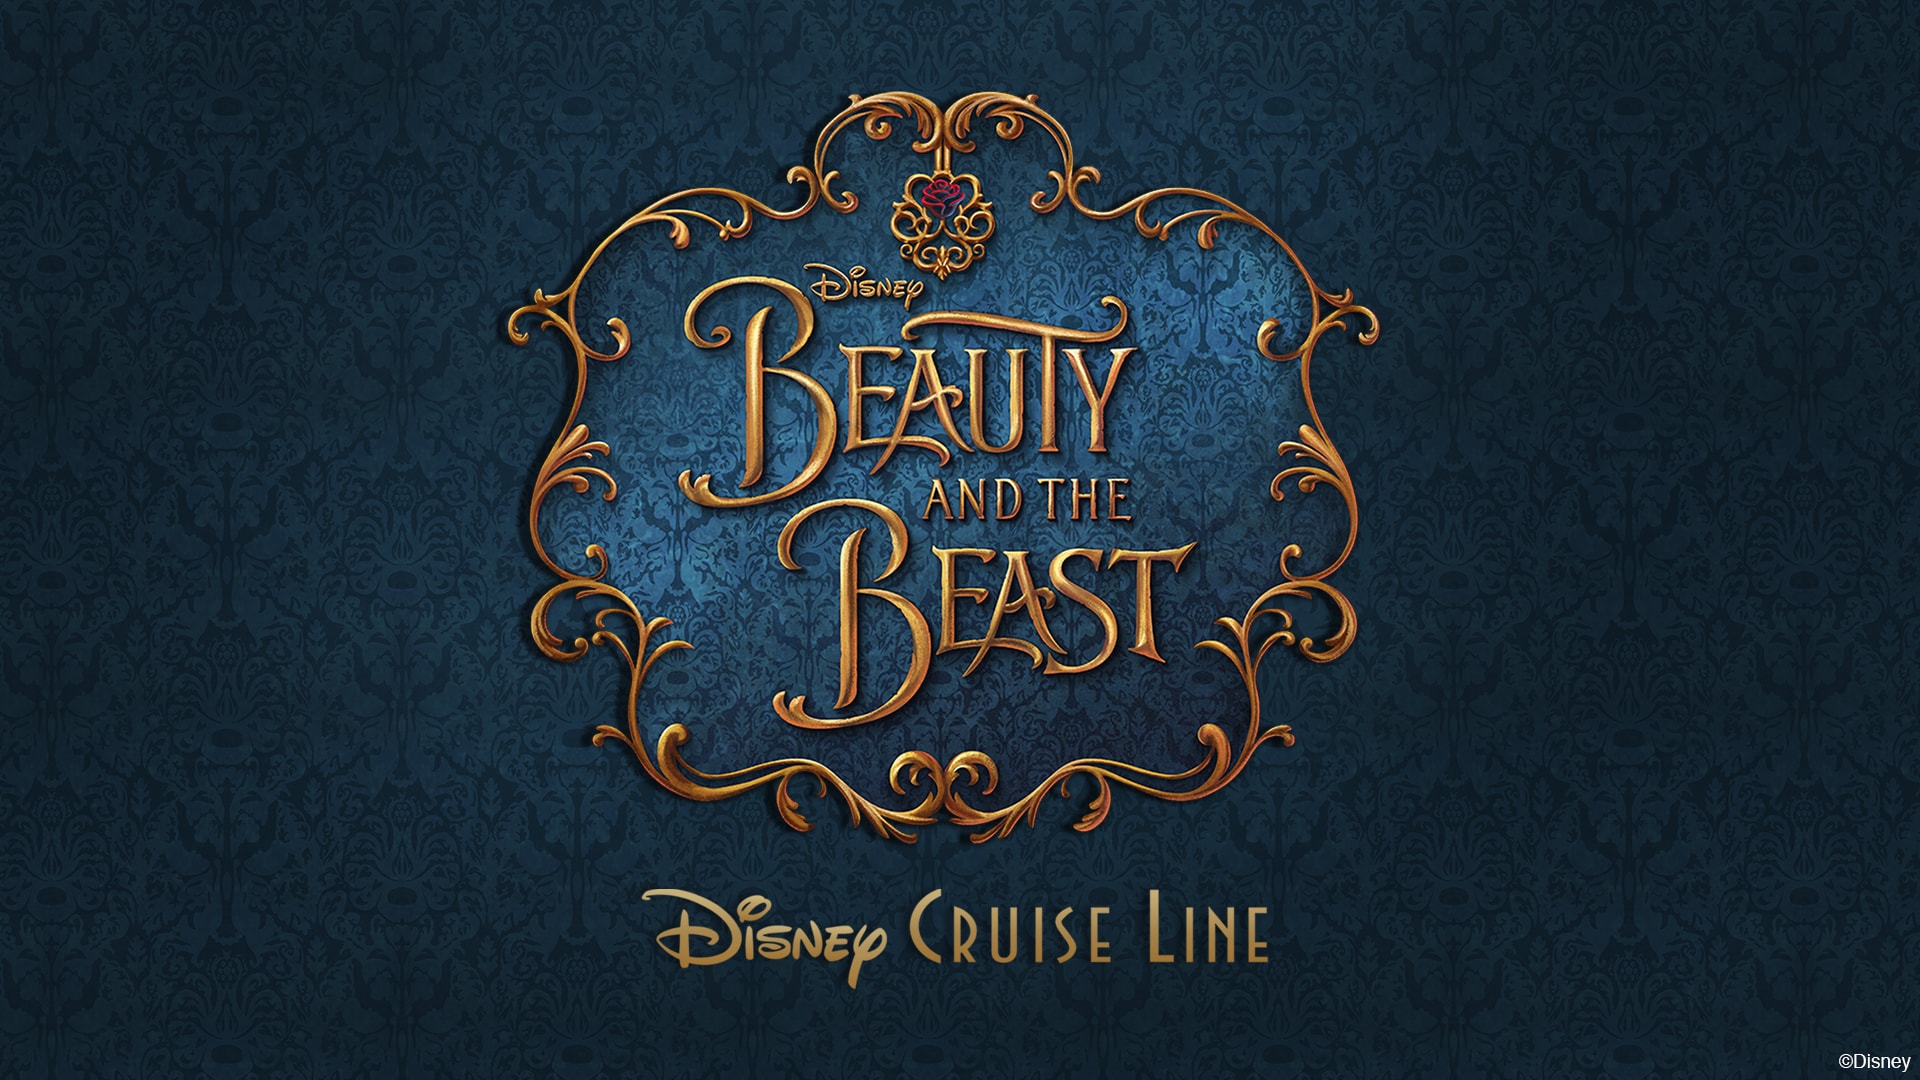 Lấy cảm hứng từ Beauty and the Beast, hãy khám phá bộ sưu tập đầy tinh tế và đặc biệt của Disney Cruise Line! Với những tấm hình nền đầy tính nghệ thuật và khéo léo, được thiết kế bởi những nhà thiết kế tài năng, bạn sẽ được trải nghiệm một diện mạo mới cho màn hình của mình.